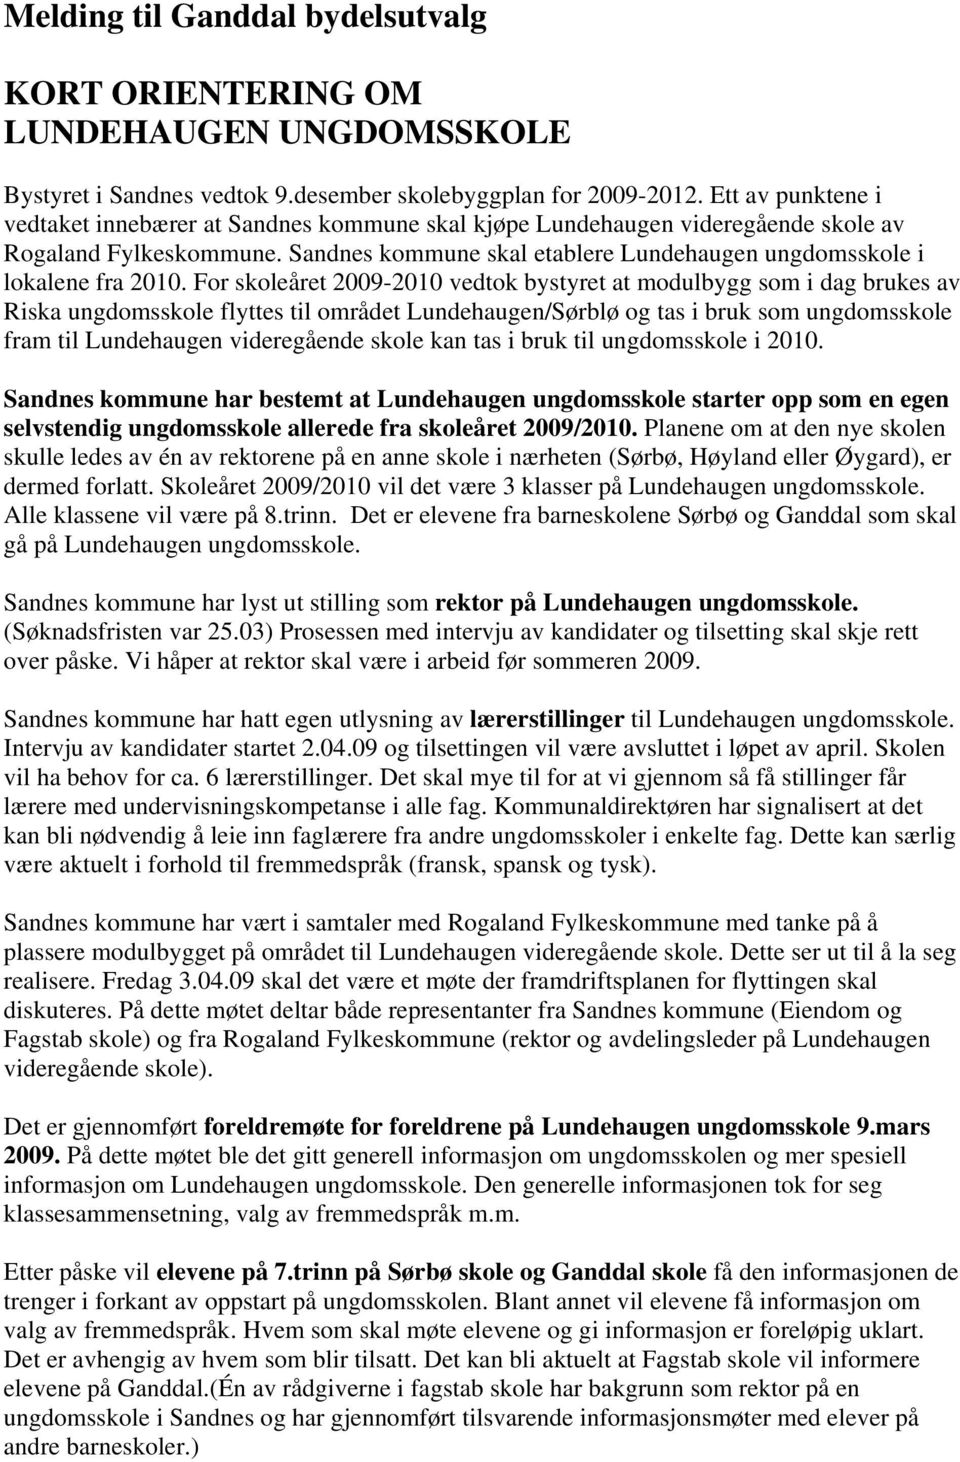 For skoleåret 2009-2010 vedtok bystyret at modulbygg som i dag brukes av Riska ungdomsskole flyttes til området Lundehaugen/Sørblø og tas i bruk som ungdomsskole fram til Lundehaugen videregående